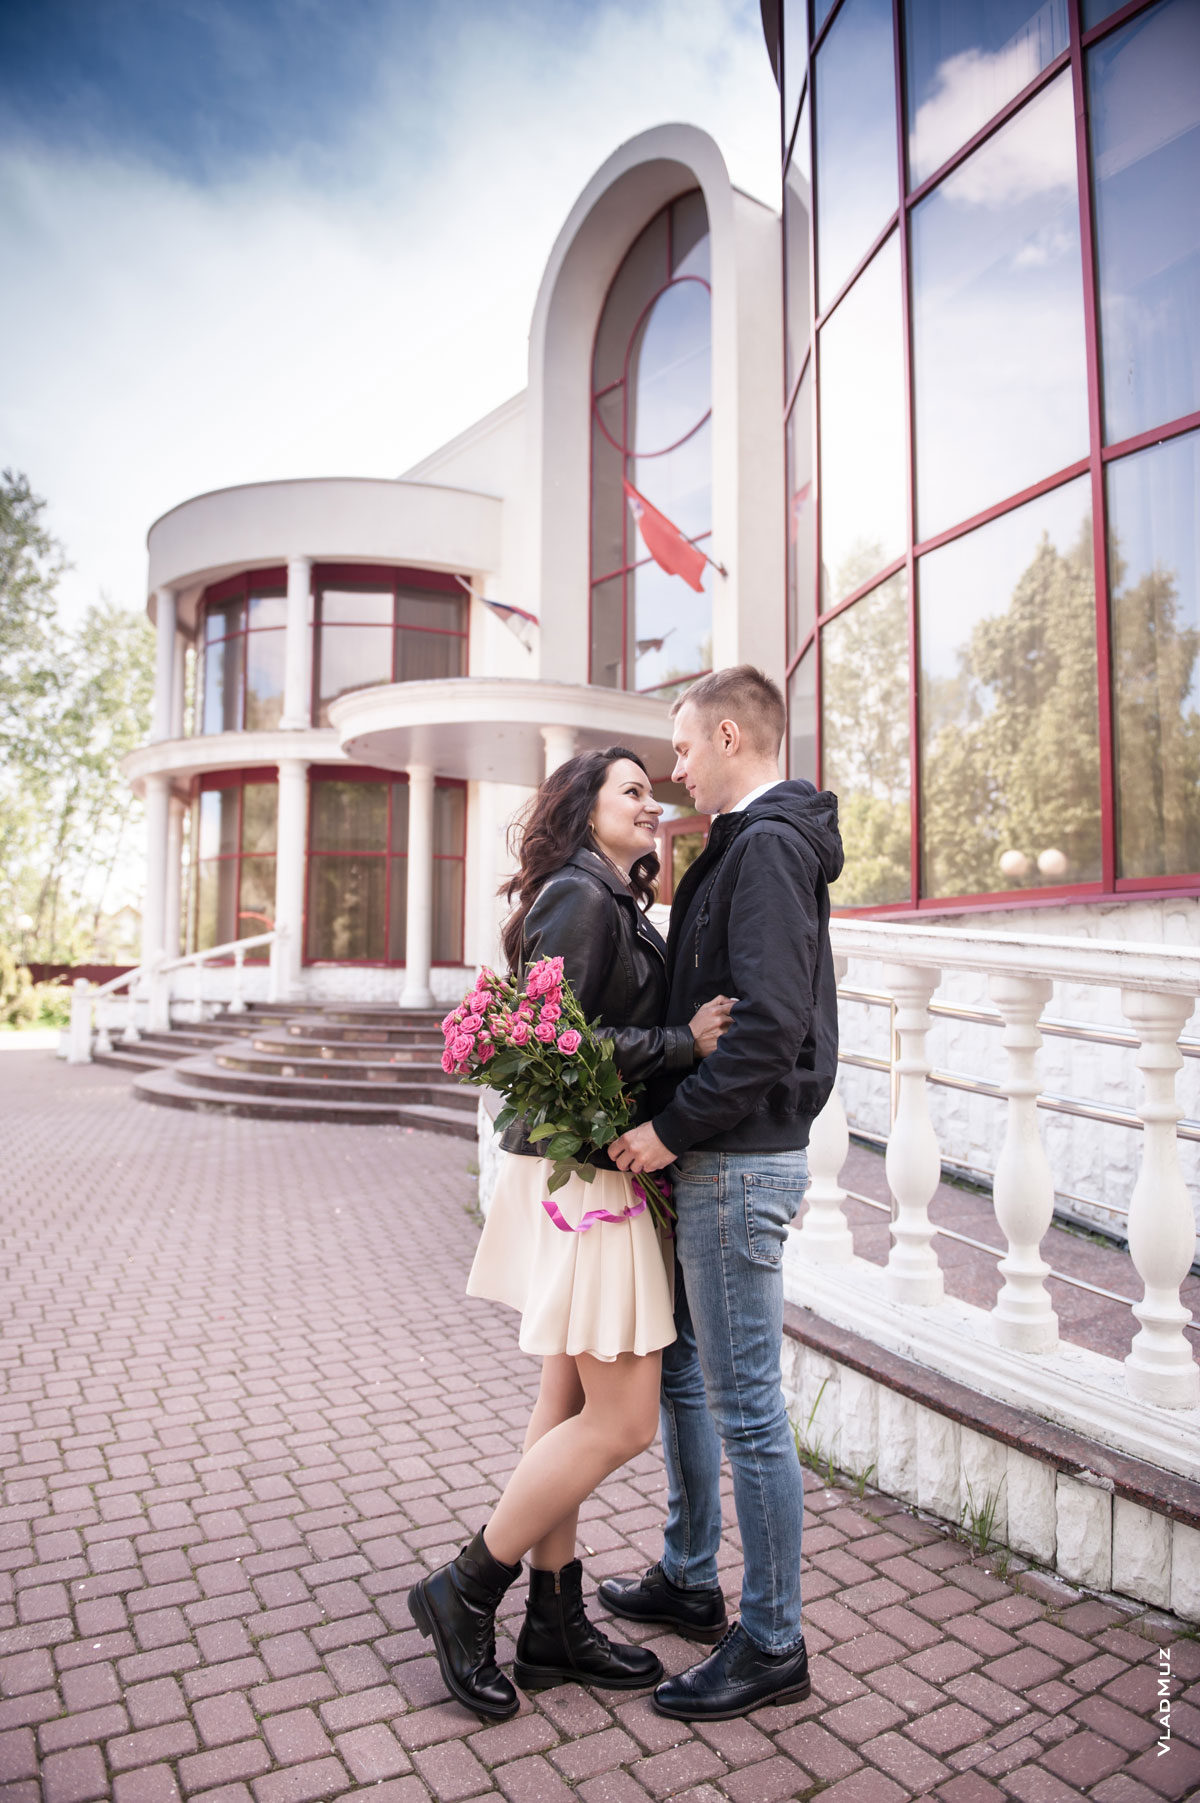 Фото девушки и мужчины с букетом цветов в полный рост на фоне ЗАГСа в г. Железнодорожном в Московской области